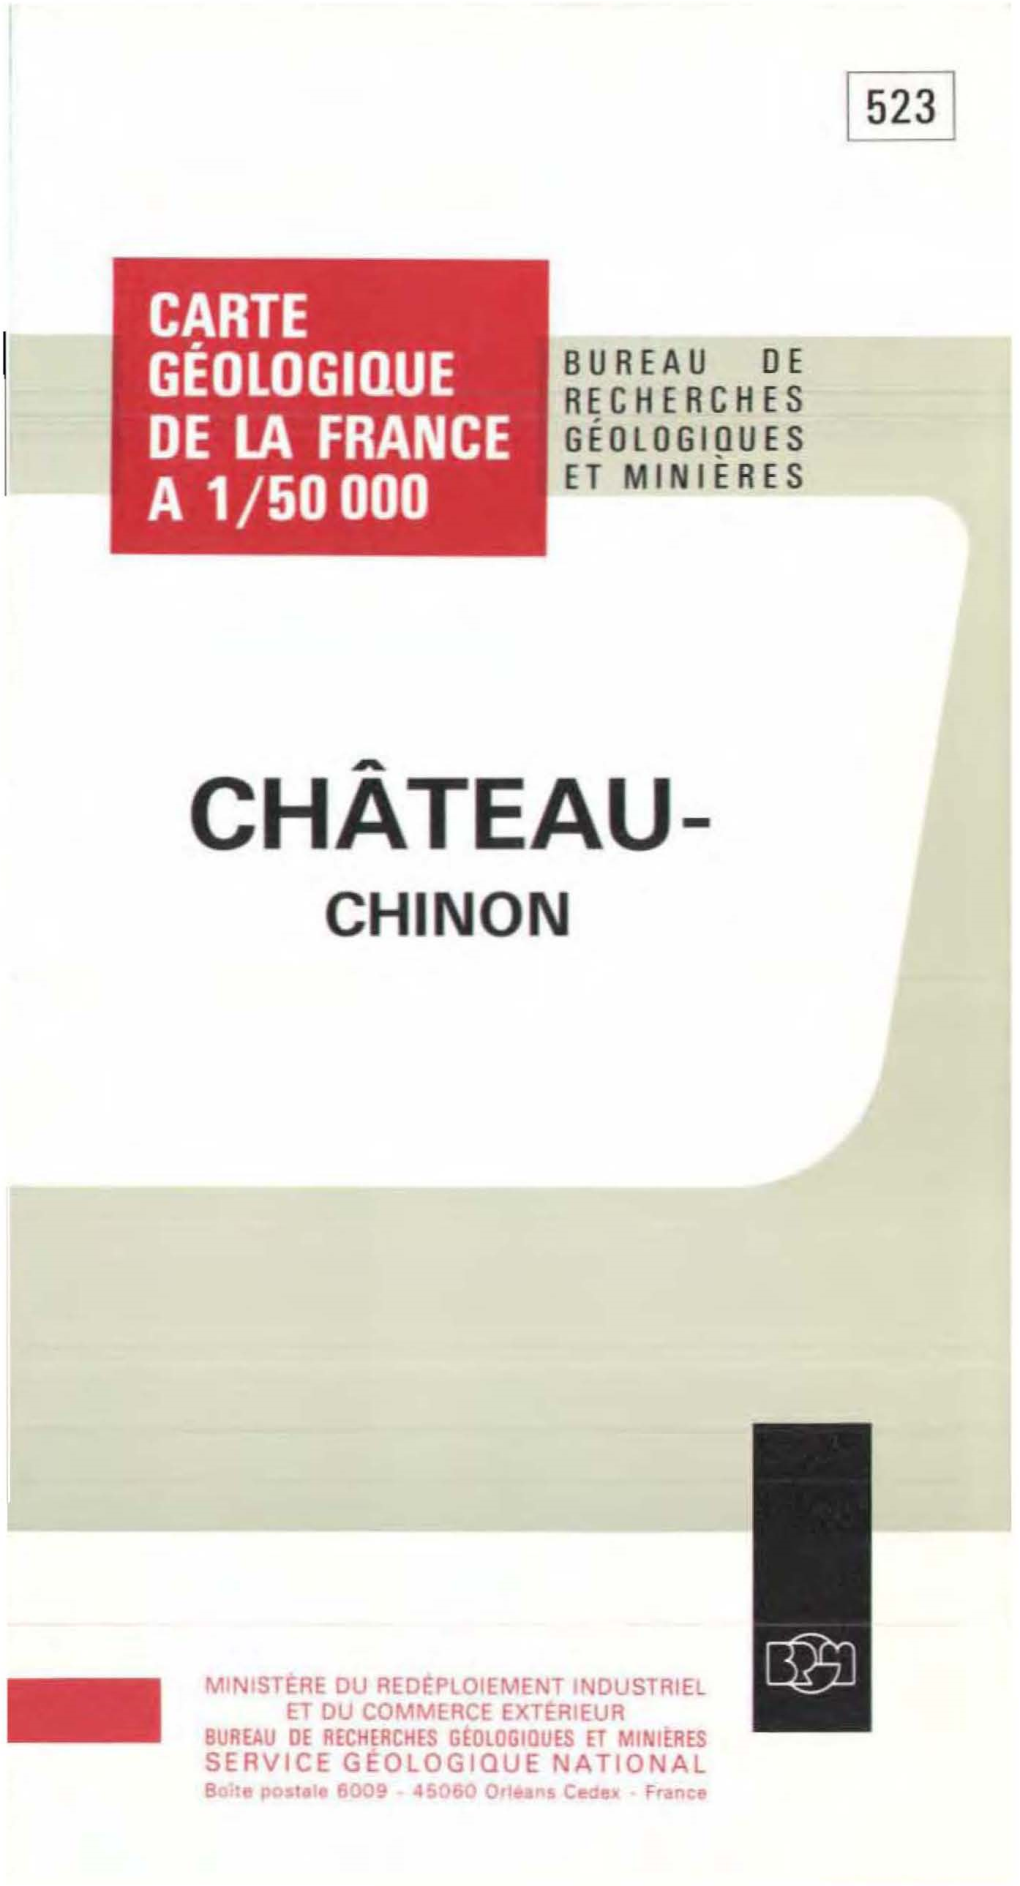 Chateau-Chinon a 1150000